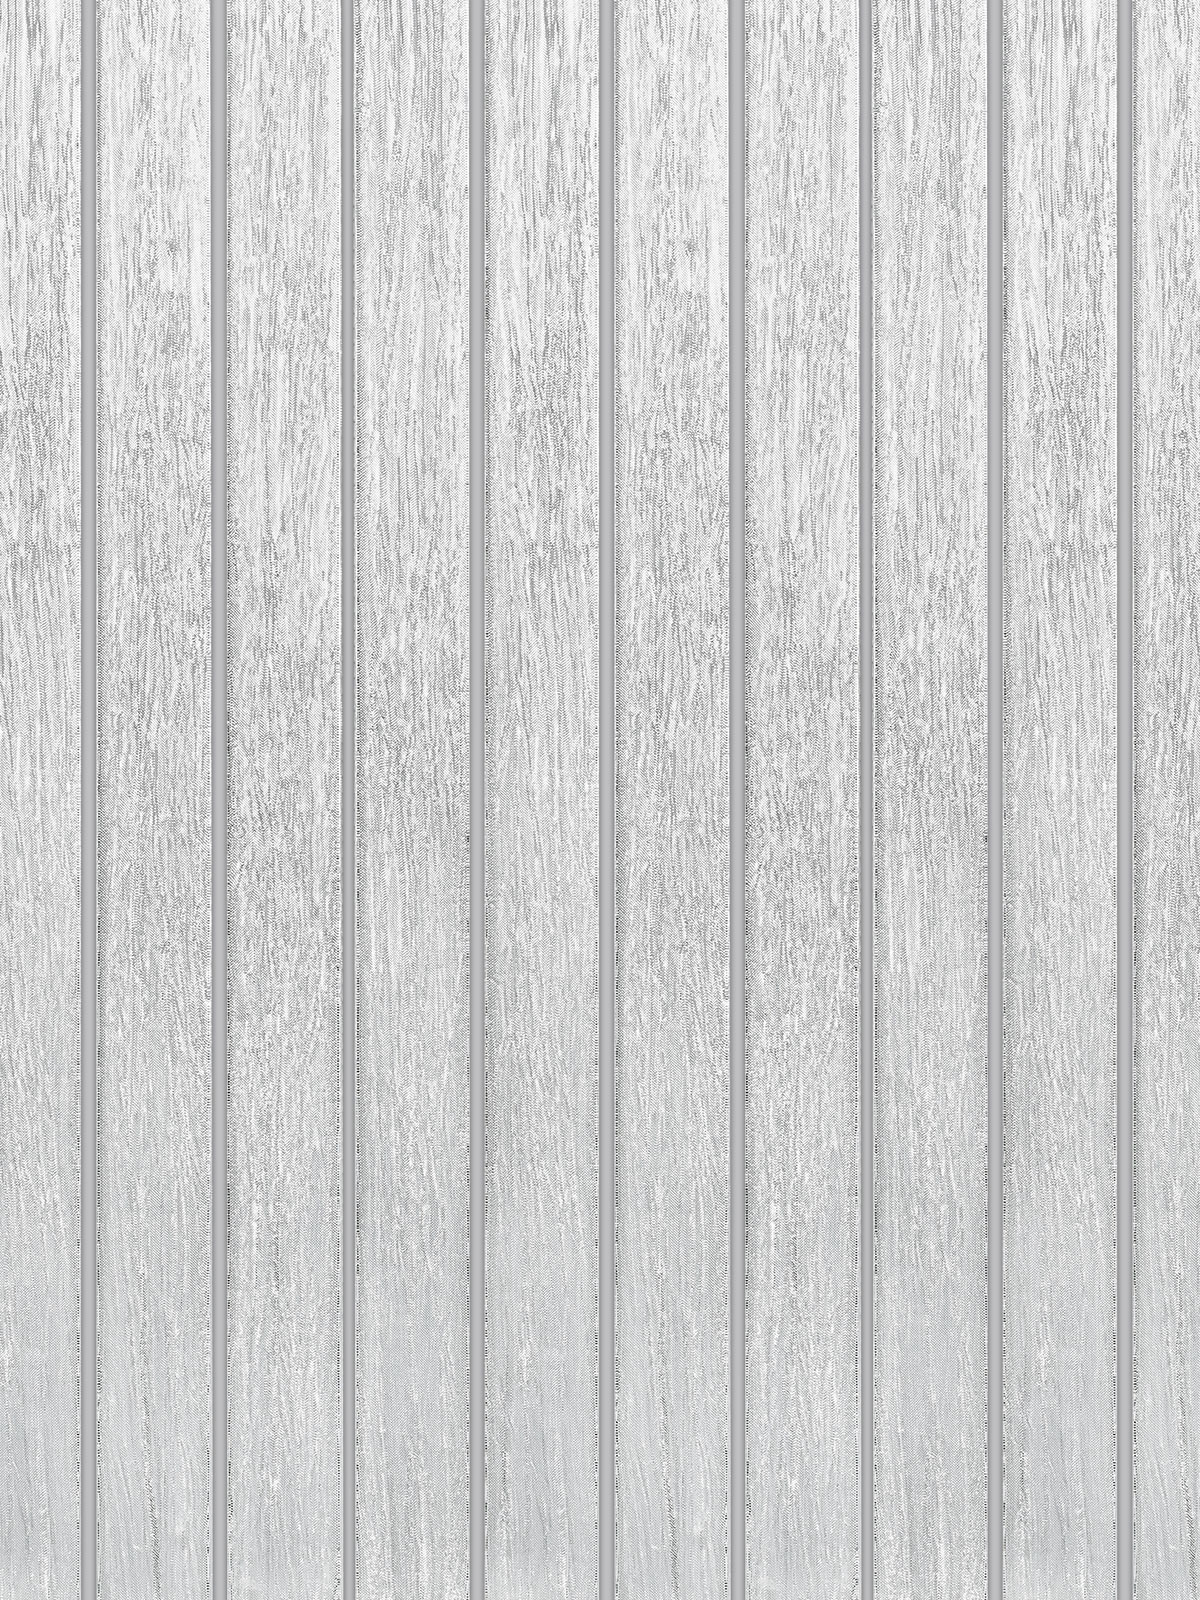 Shimmery White Glass Modern Backsplash Tile BA8022 7